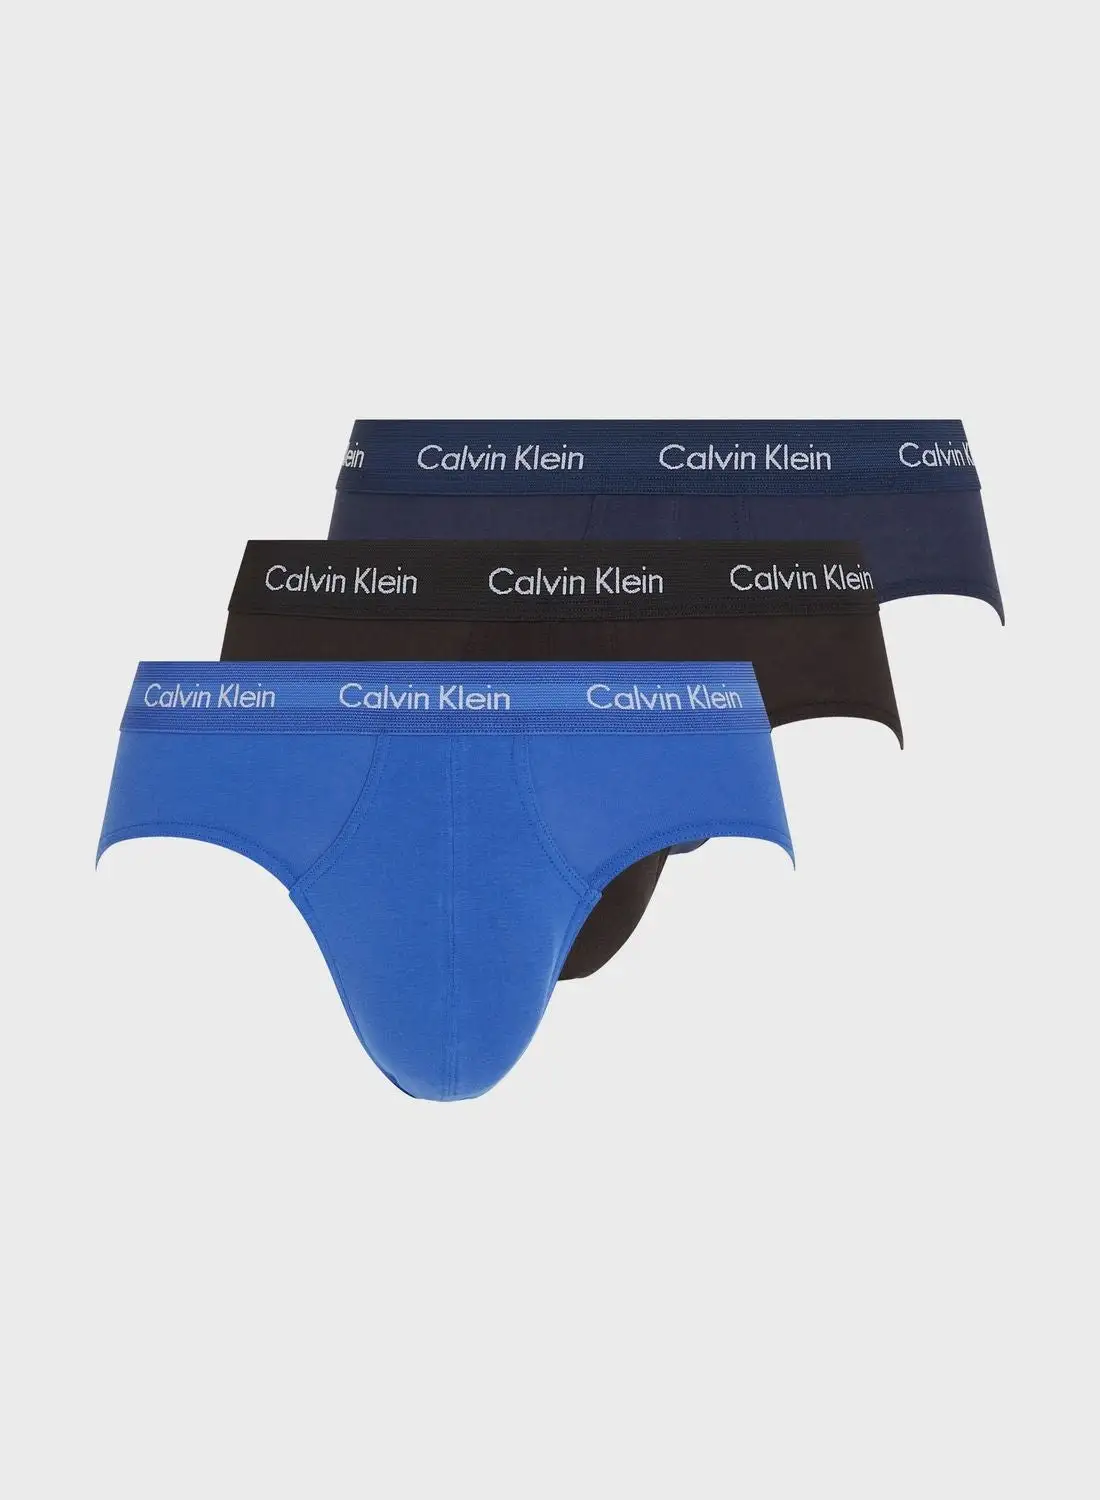 CALVIN KLEIN 3 Pack Briefs